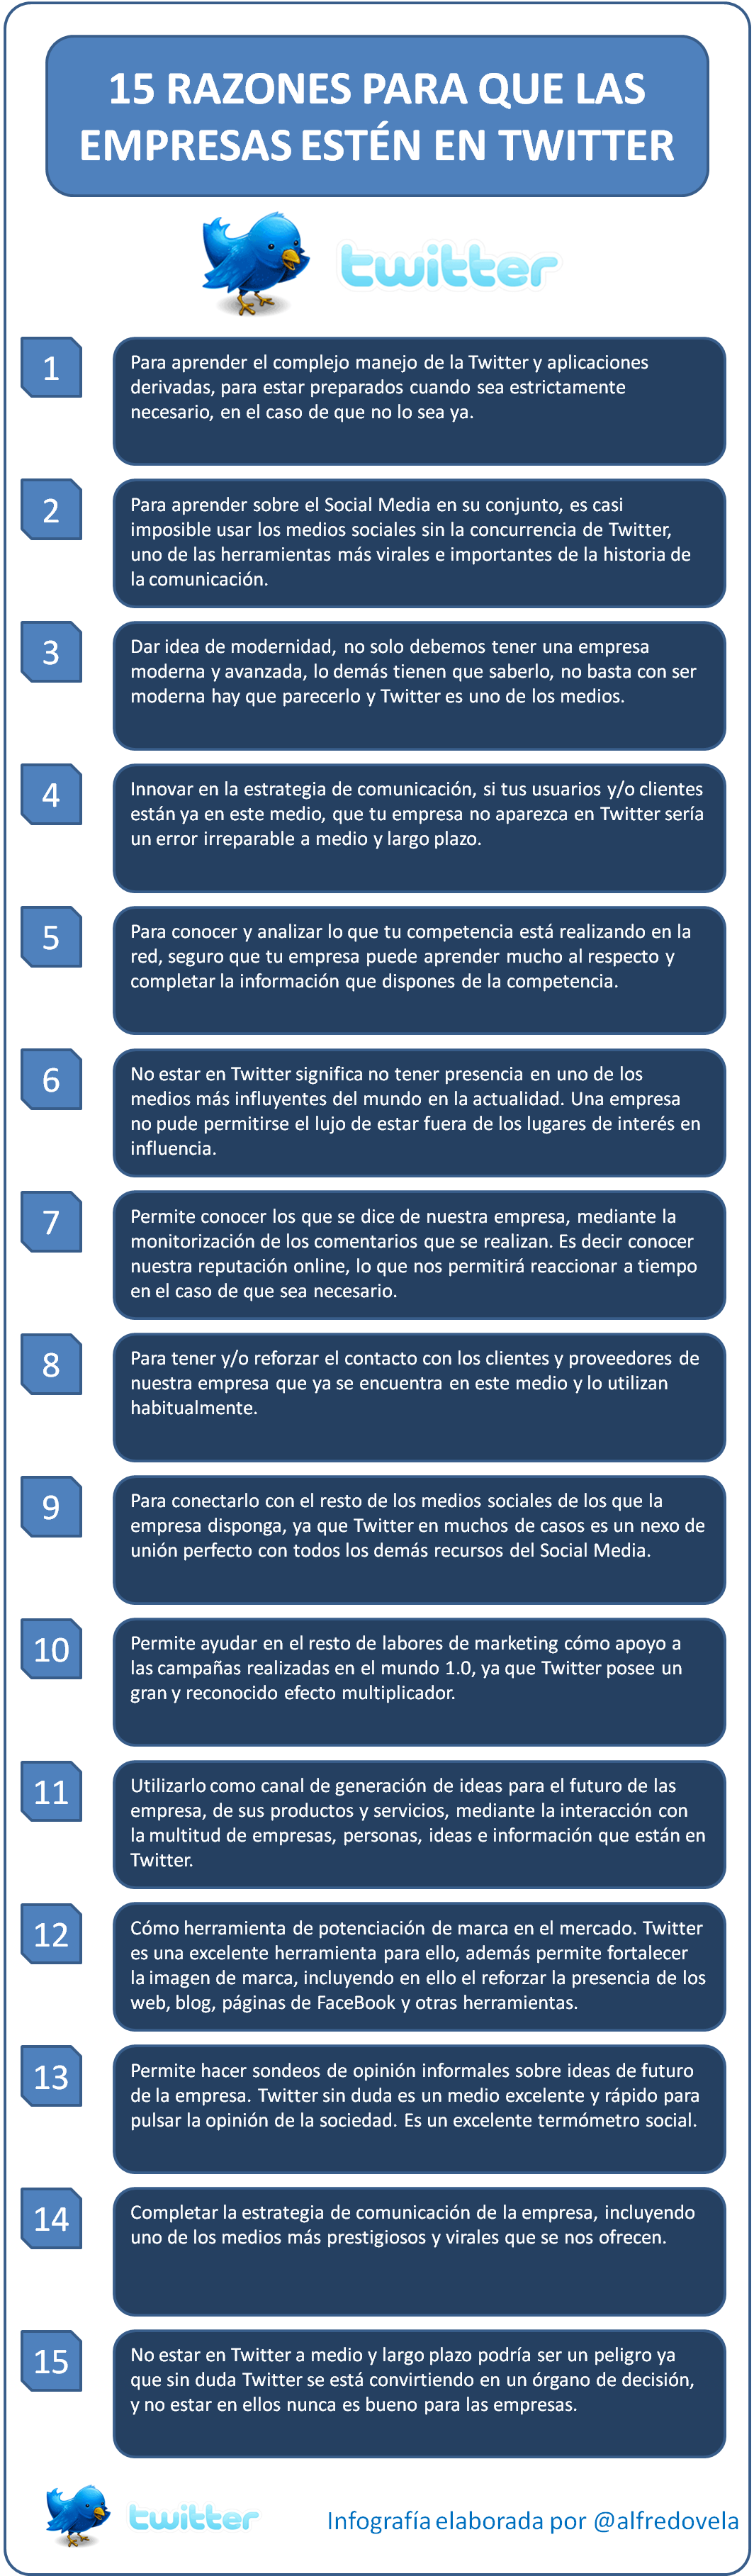 15 razones para que las empresas estén en Twitter